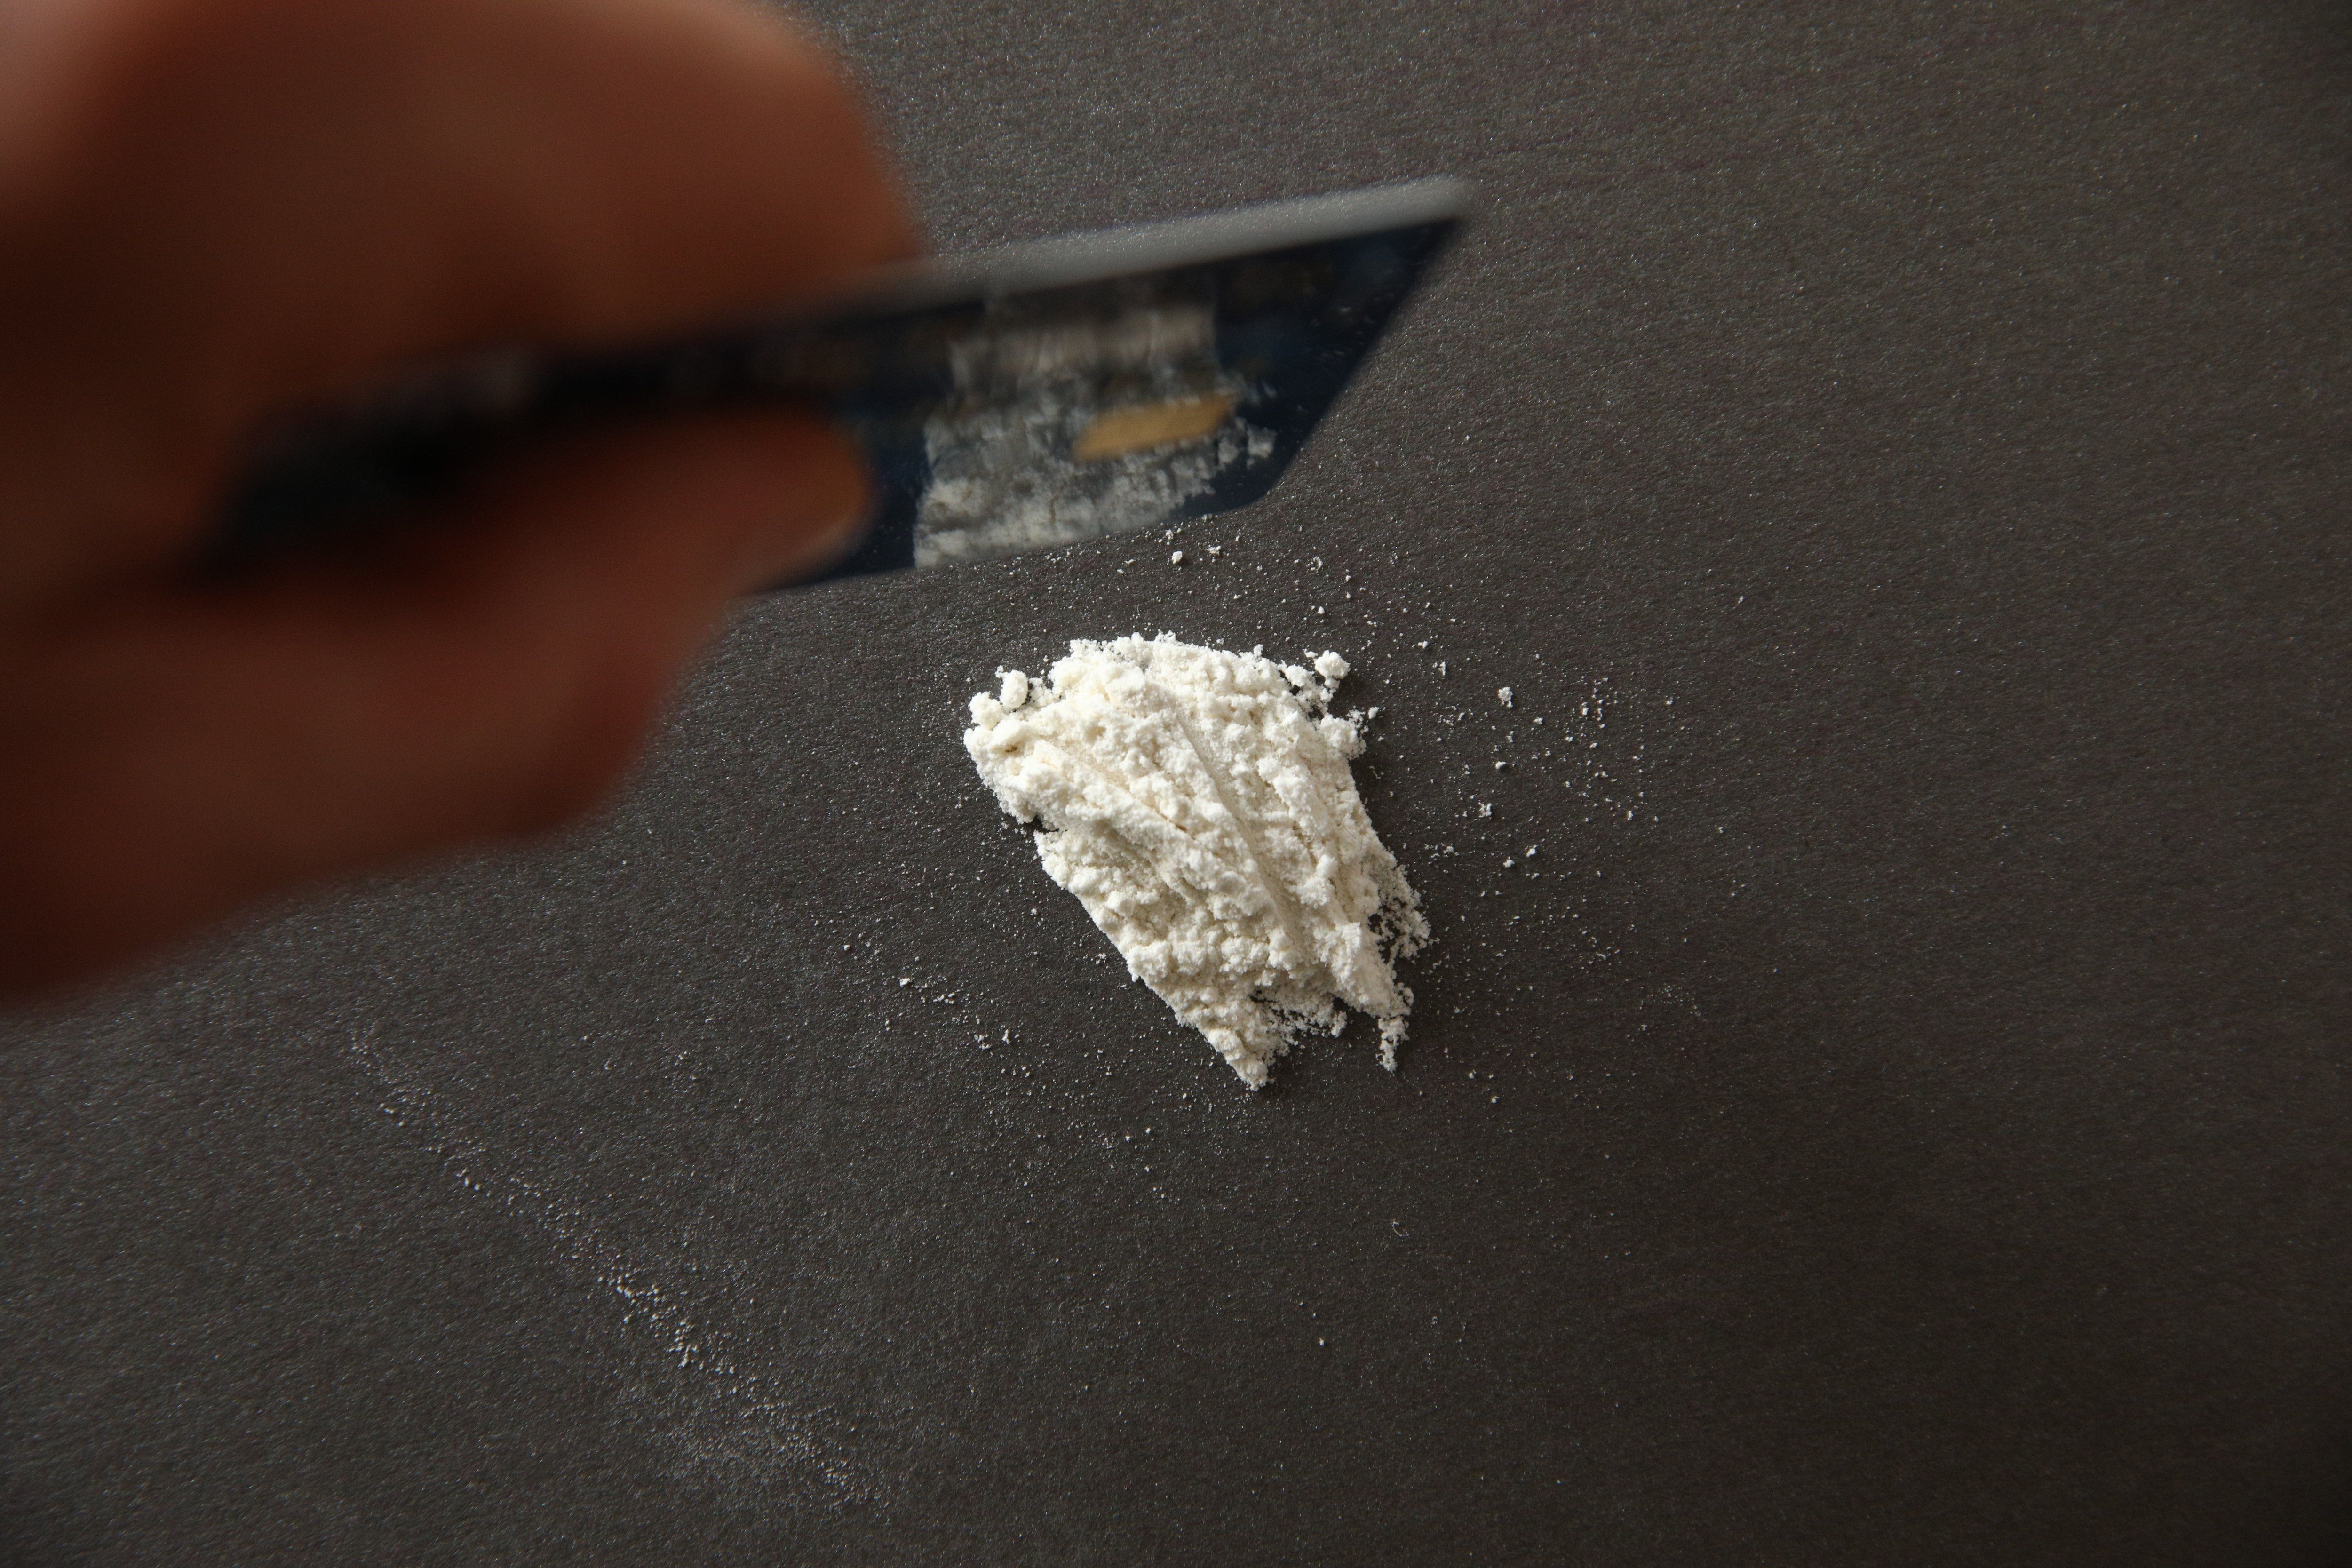 Cocaïne : baisse des prix, facilité d'accès l'inquiétante